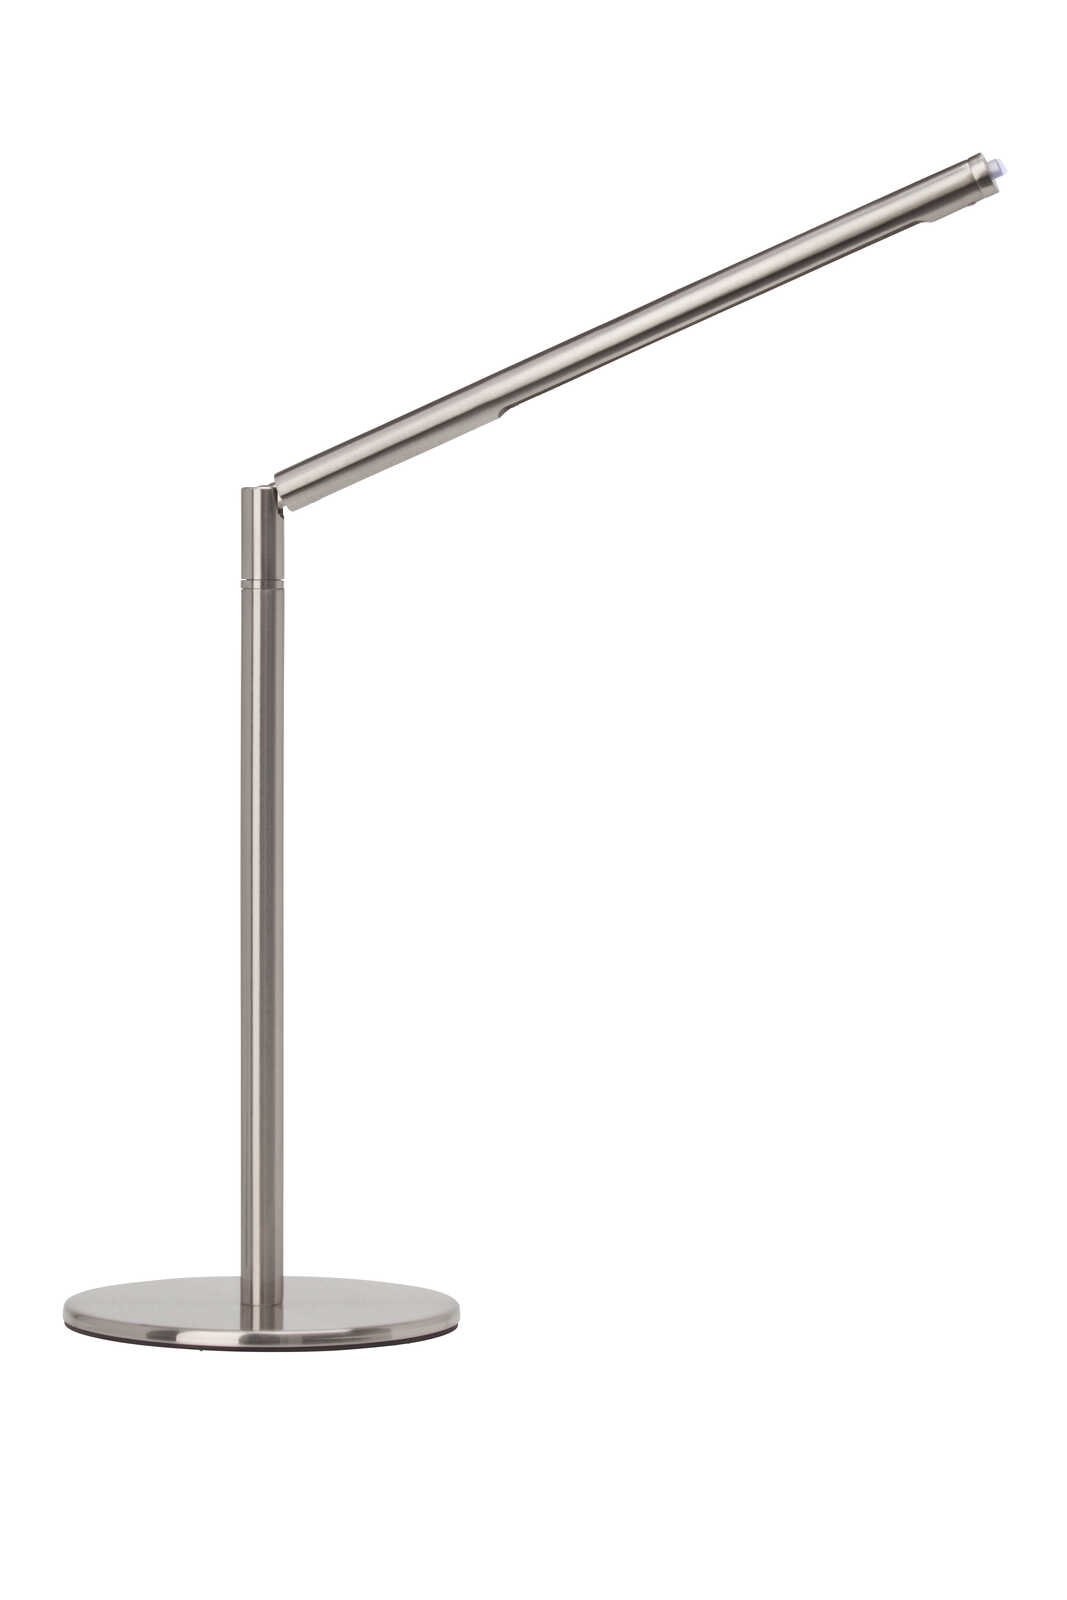             Metalen tafellamp - Carlotta - Metallic
        